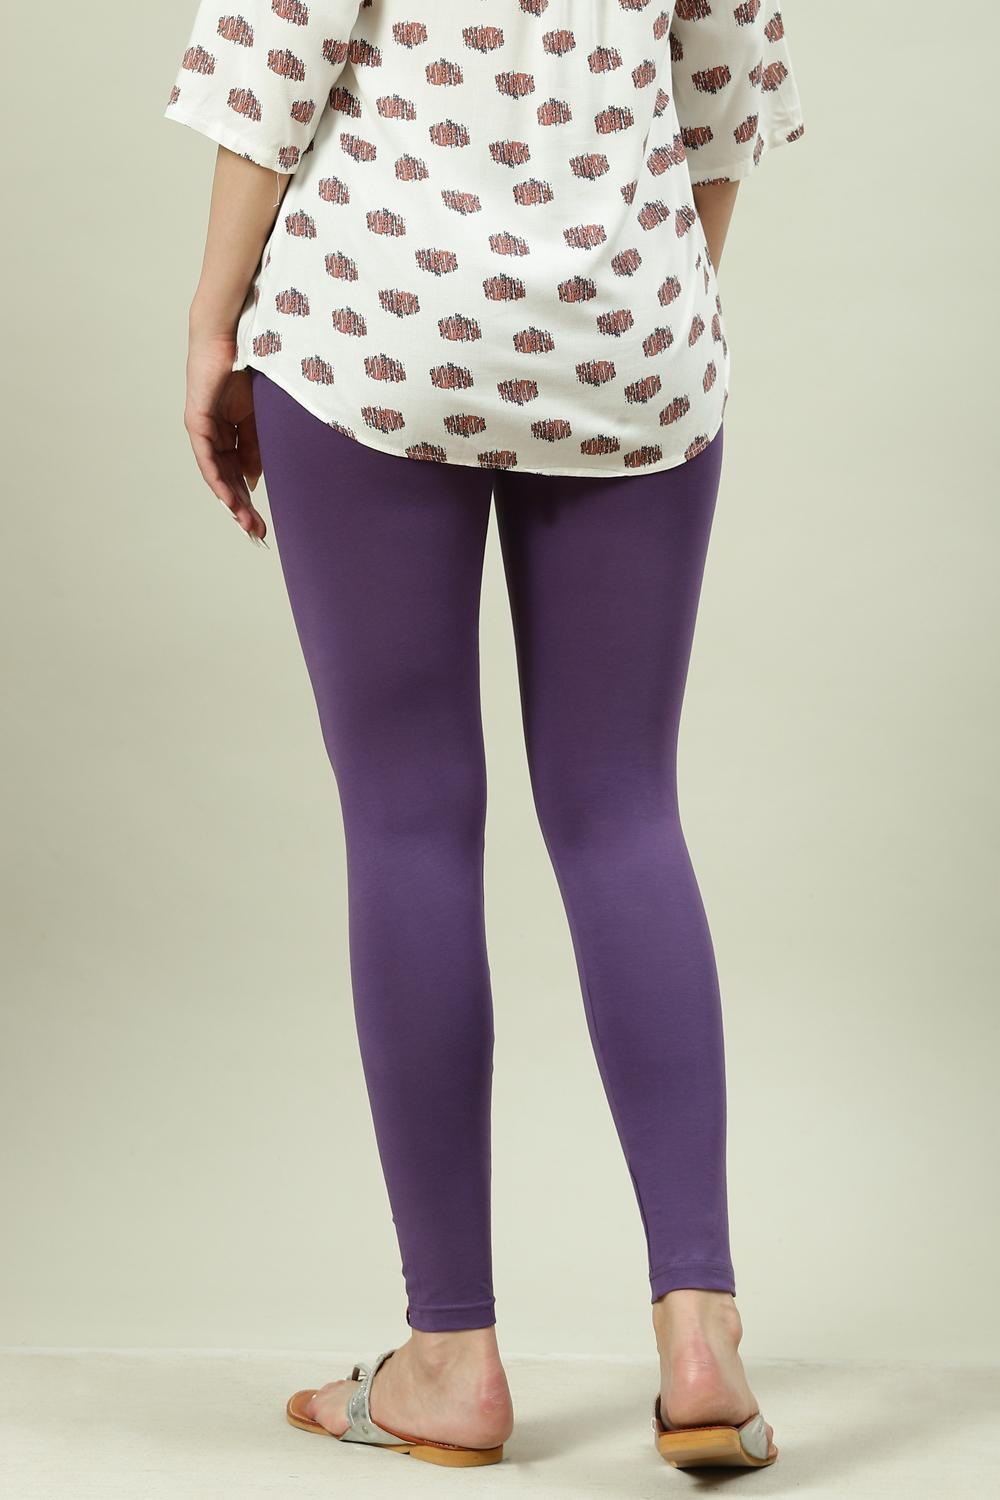 Fabulous lavender cotton leggings-anthinhphatland.vn